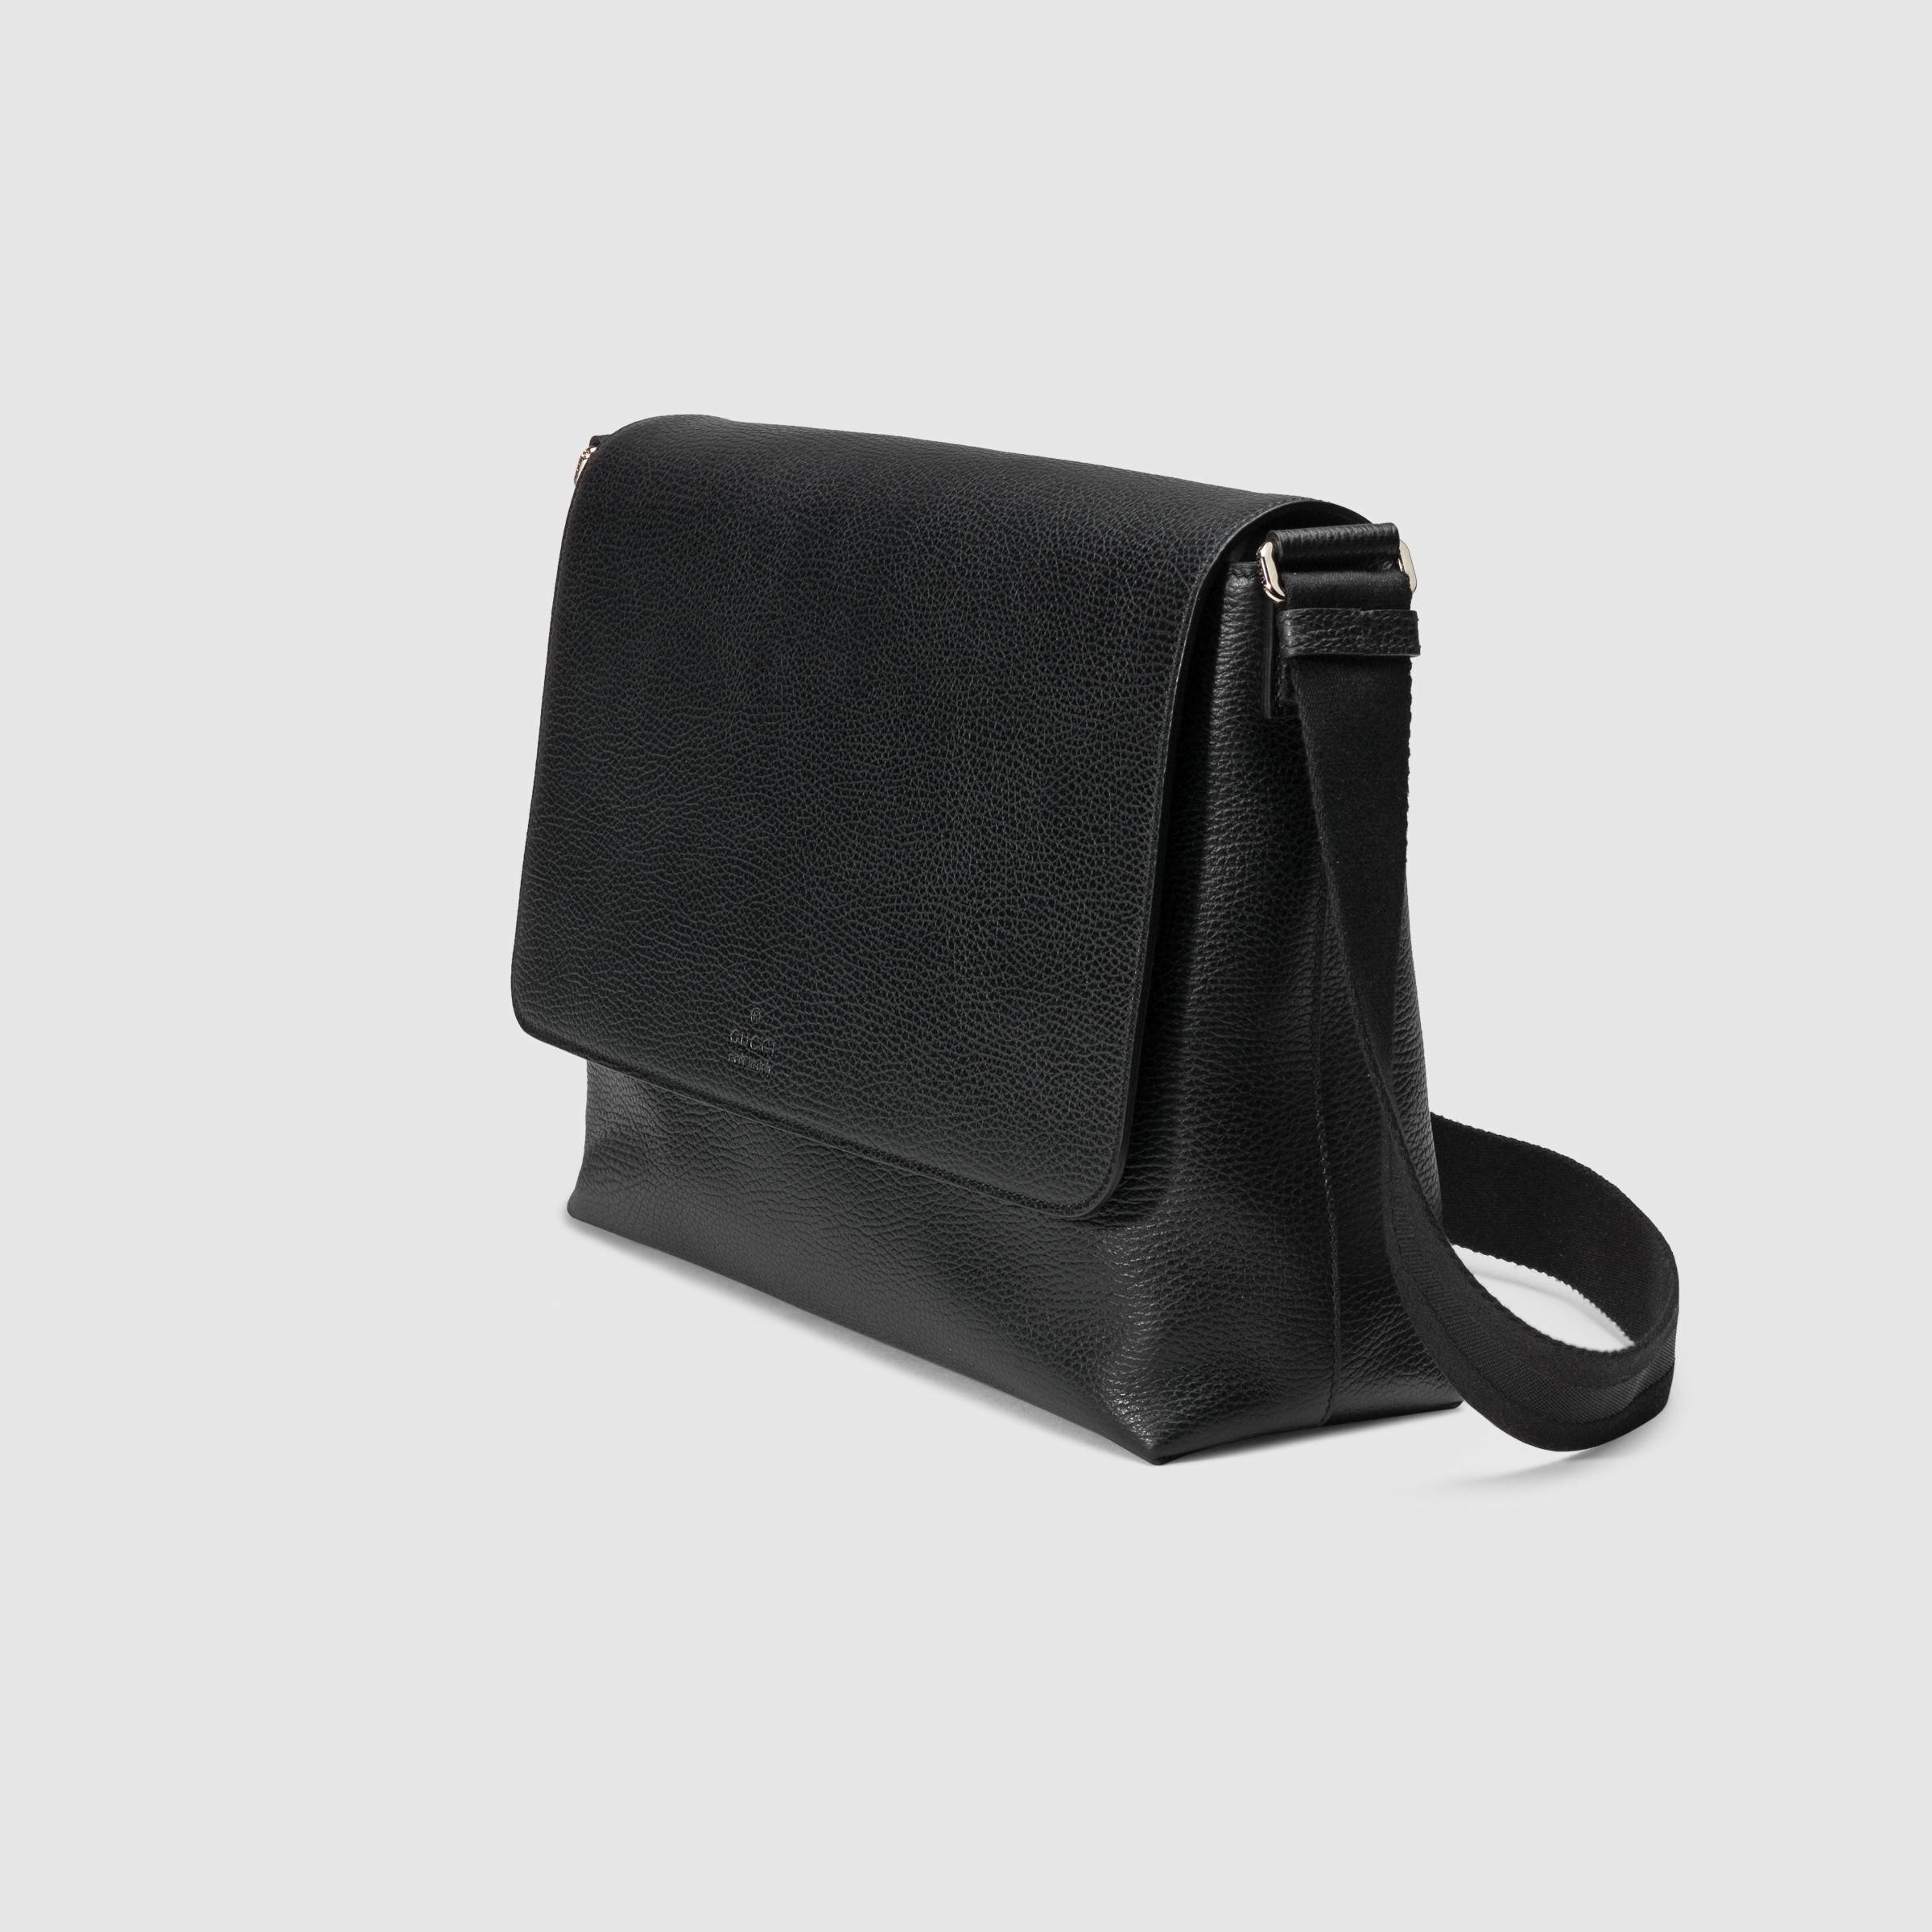 gucci black leather side bag